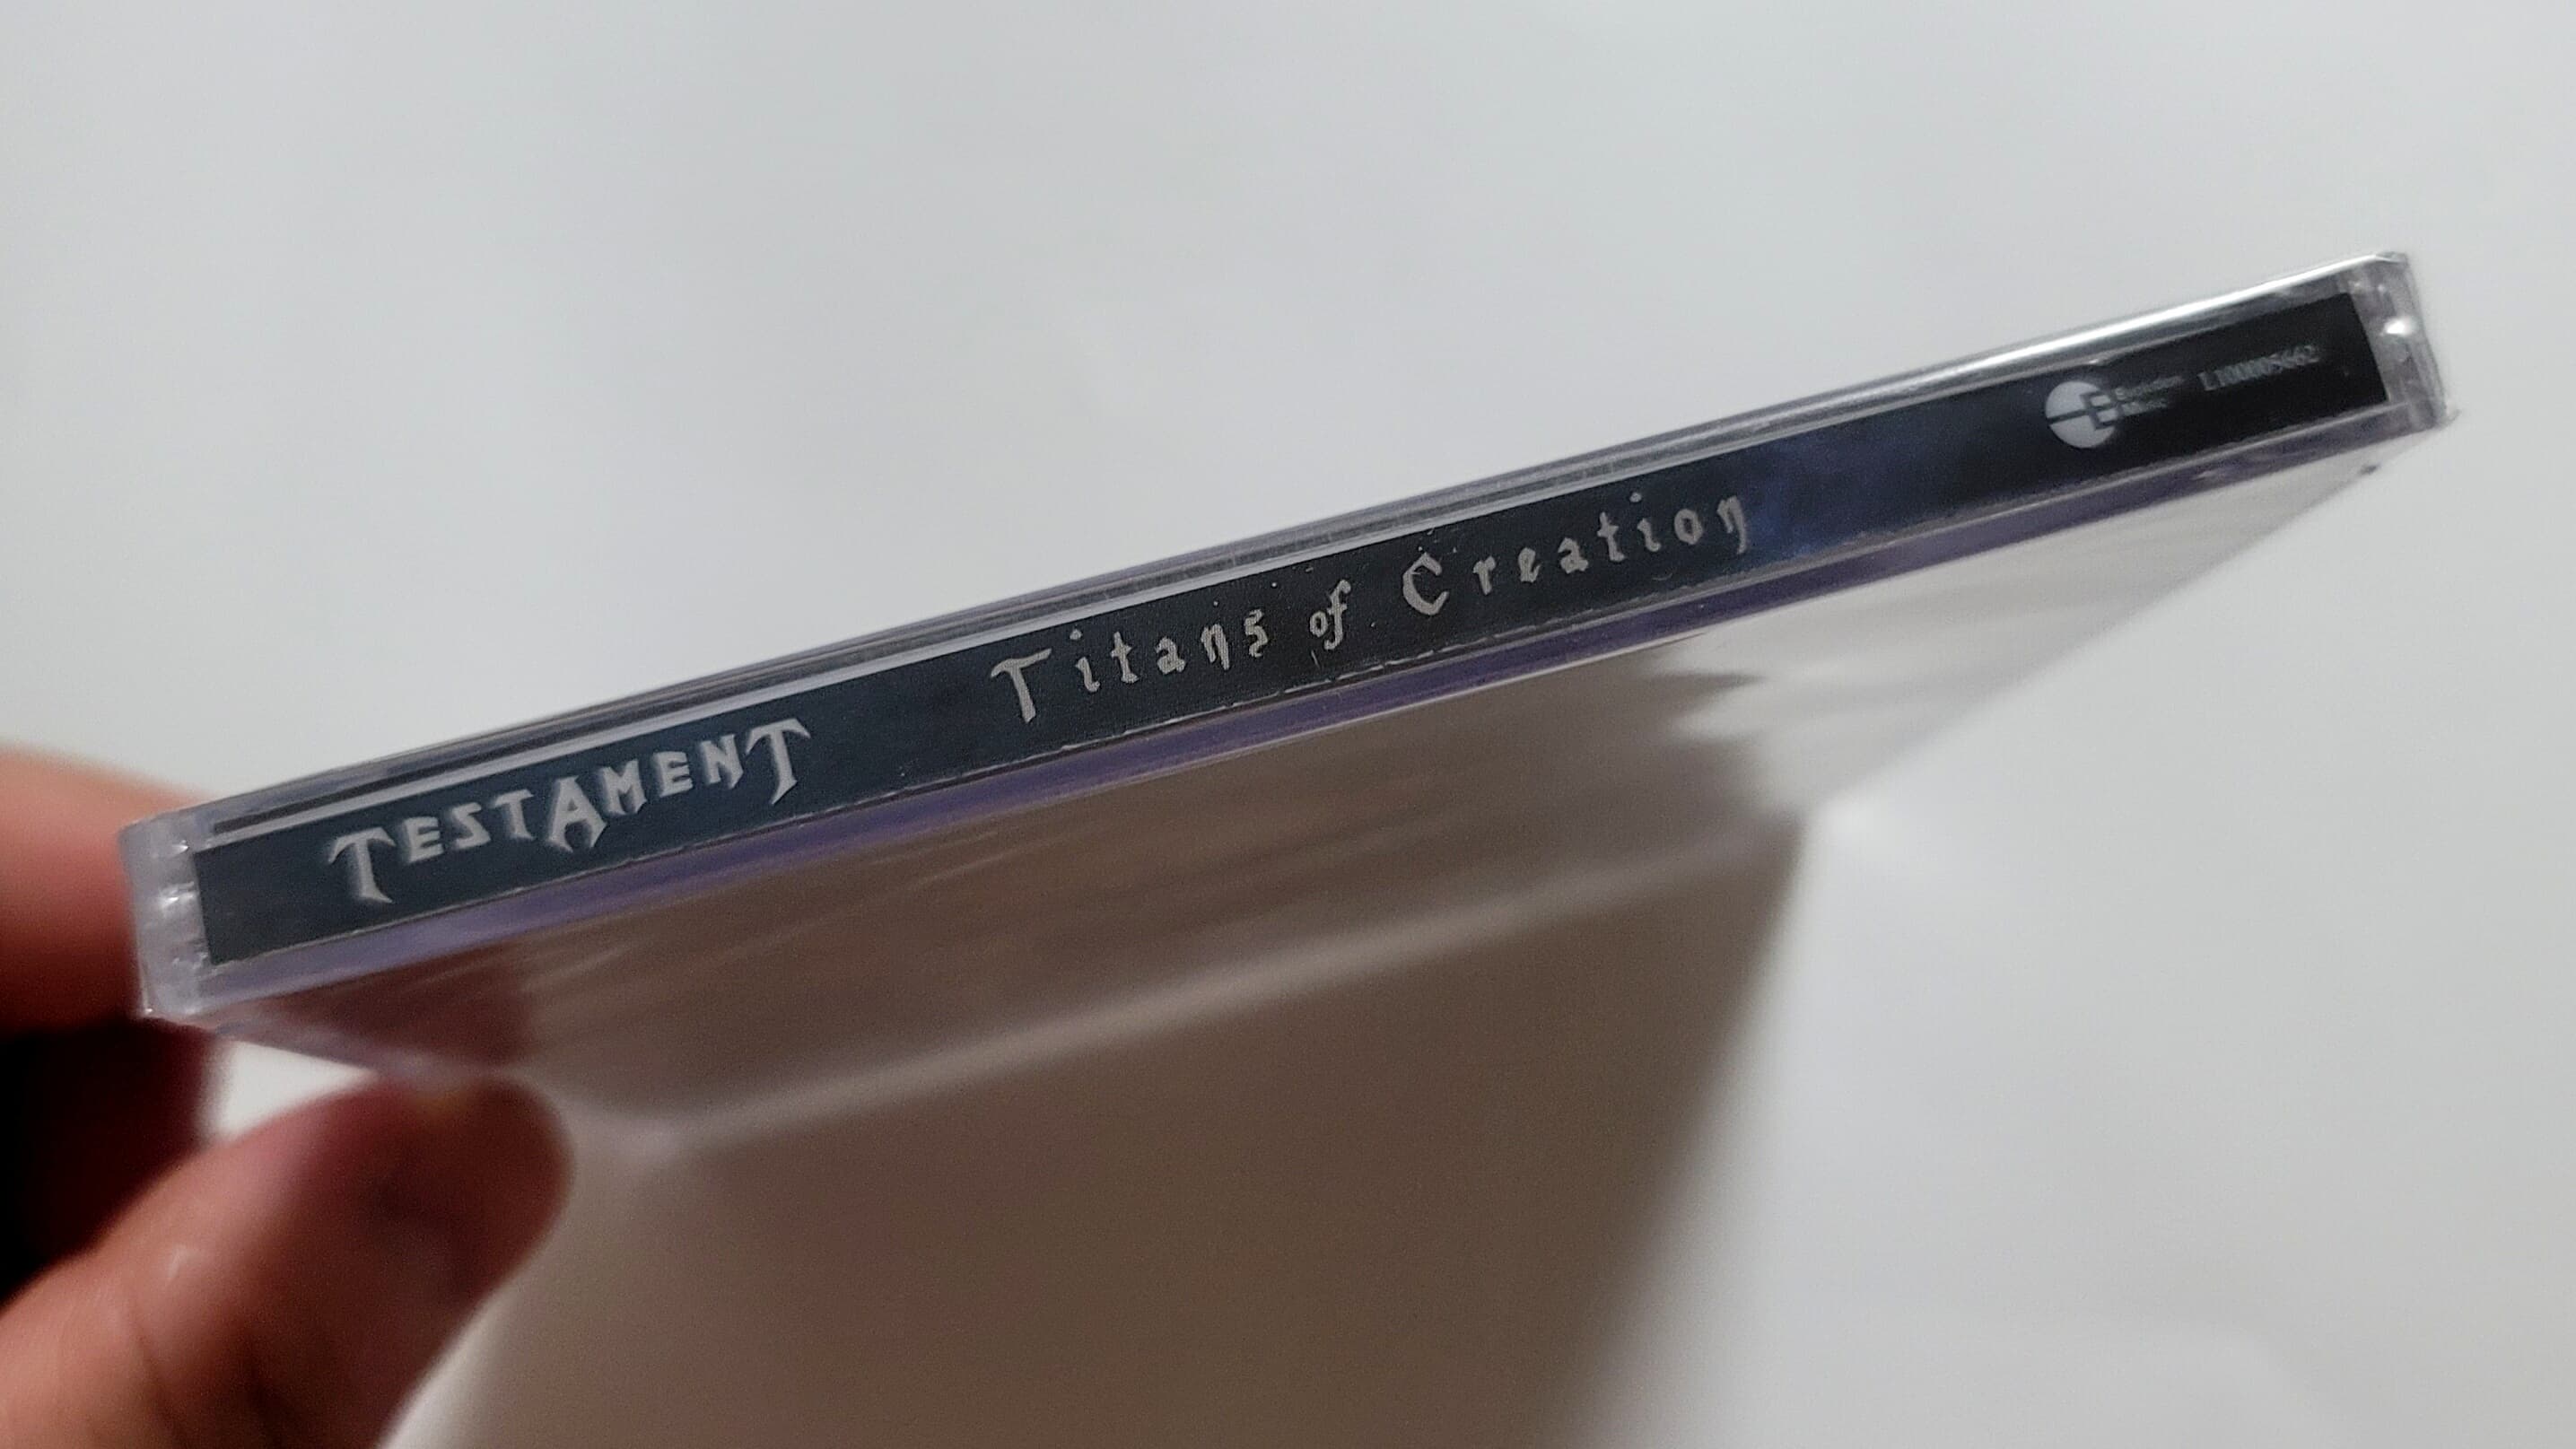 (미개봉 2CD) TESTAMENT (테스타먼트) - TITANS OF CREATION